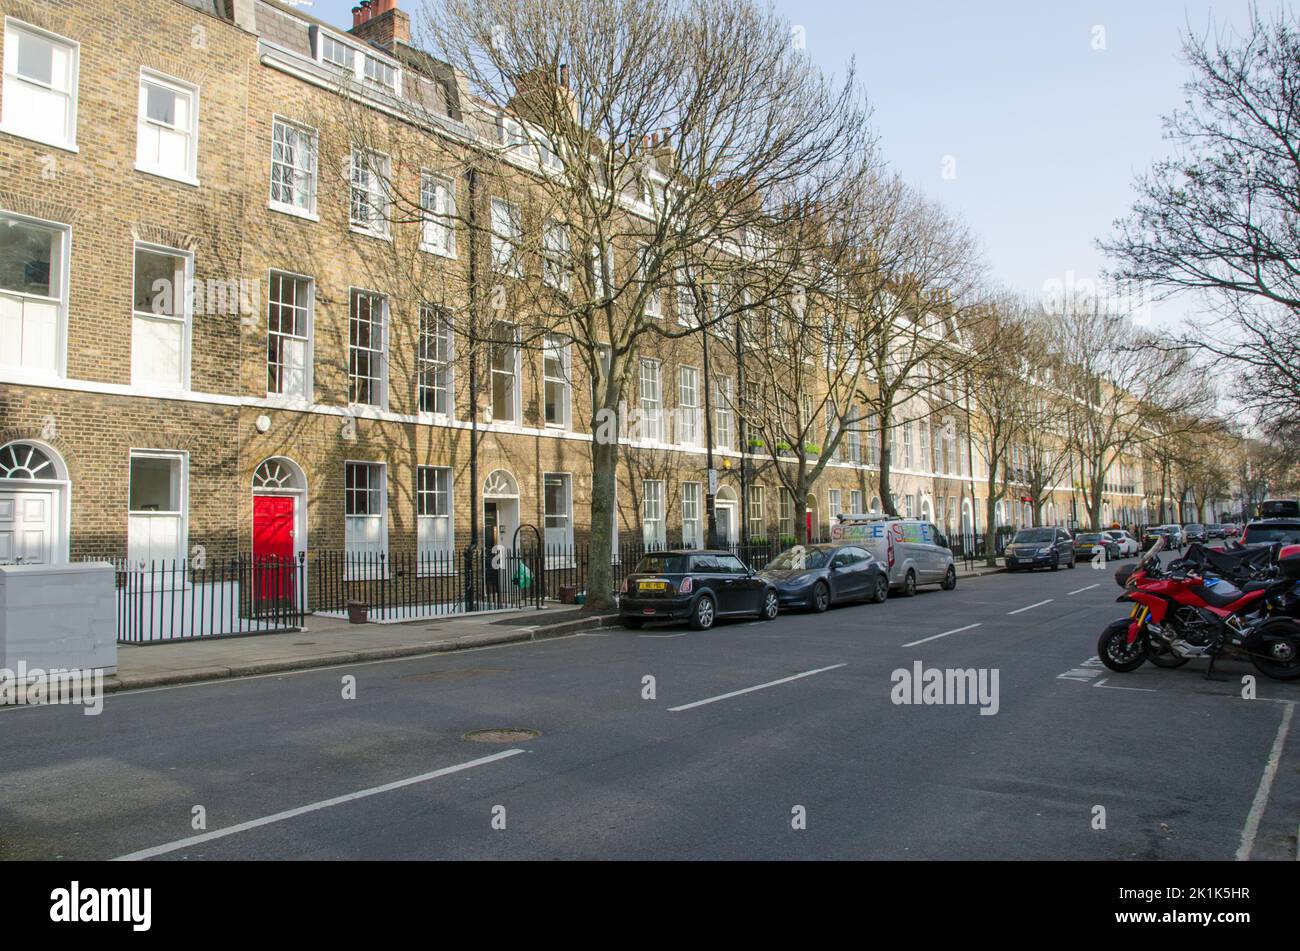 Londres, Reino Unido - 21 de marzo de 2022: Vista a lo largo de la histórica Doughty Street en Bloomsbury, centro de Londres. Hogar de muchas firmas legales y compañías de medios de comunicación. Foto de stock